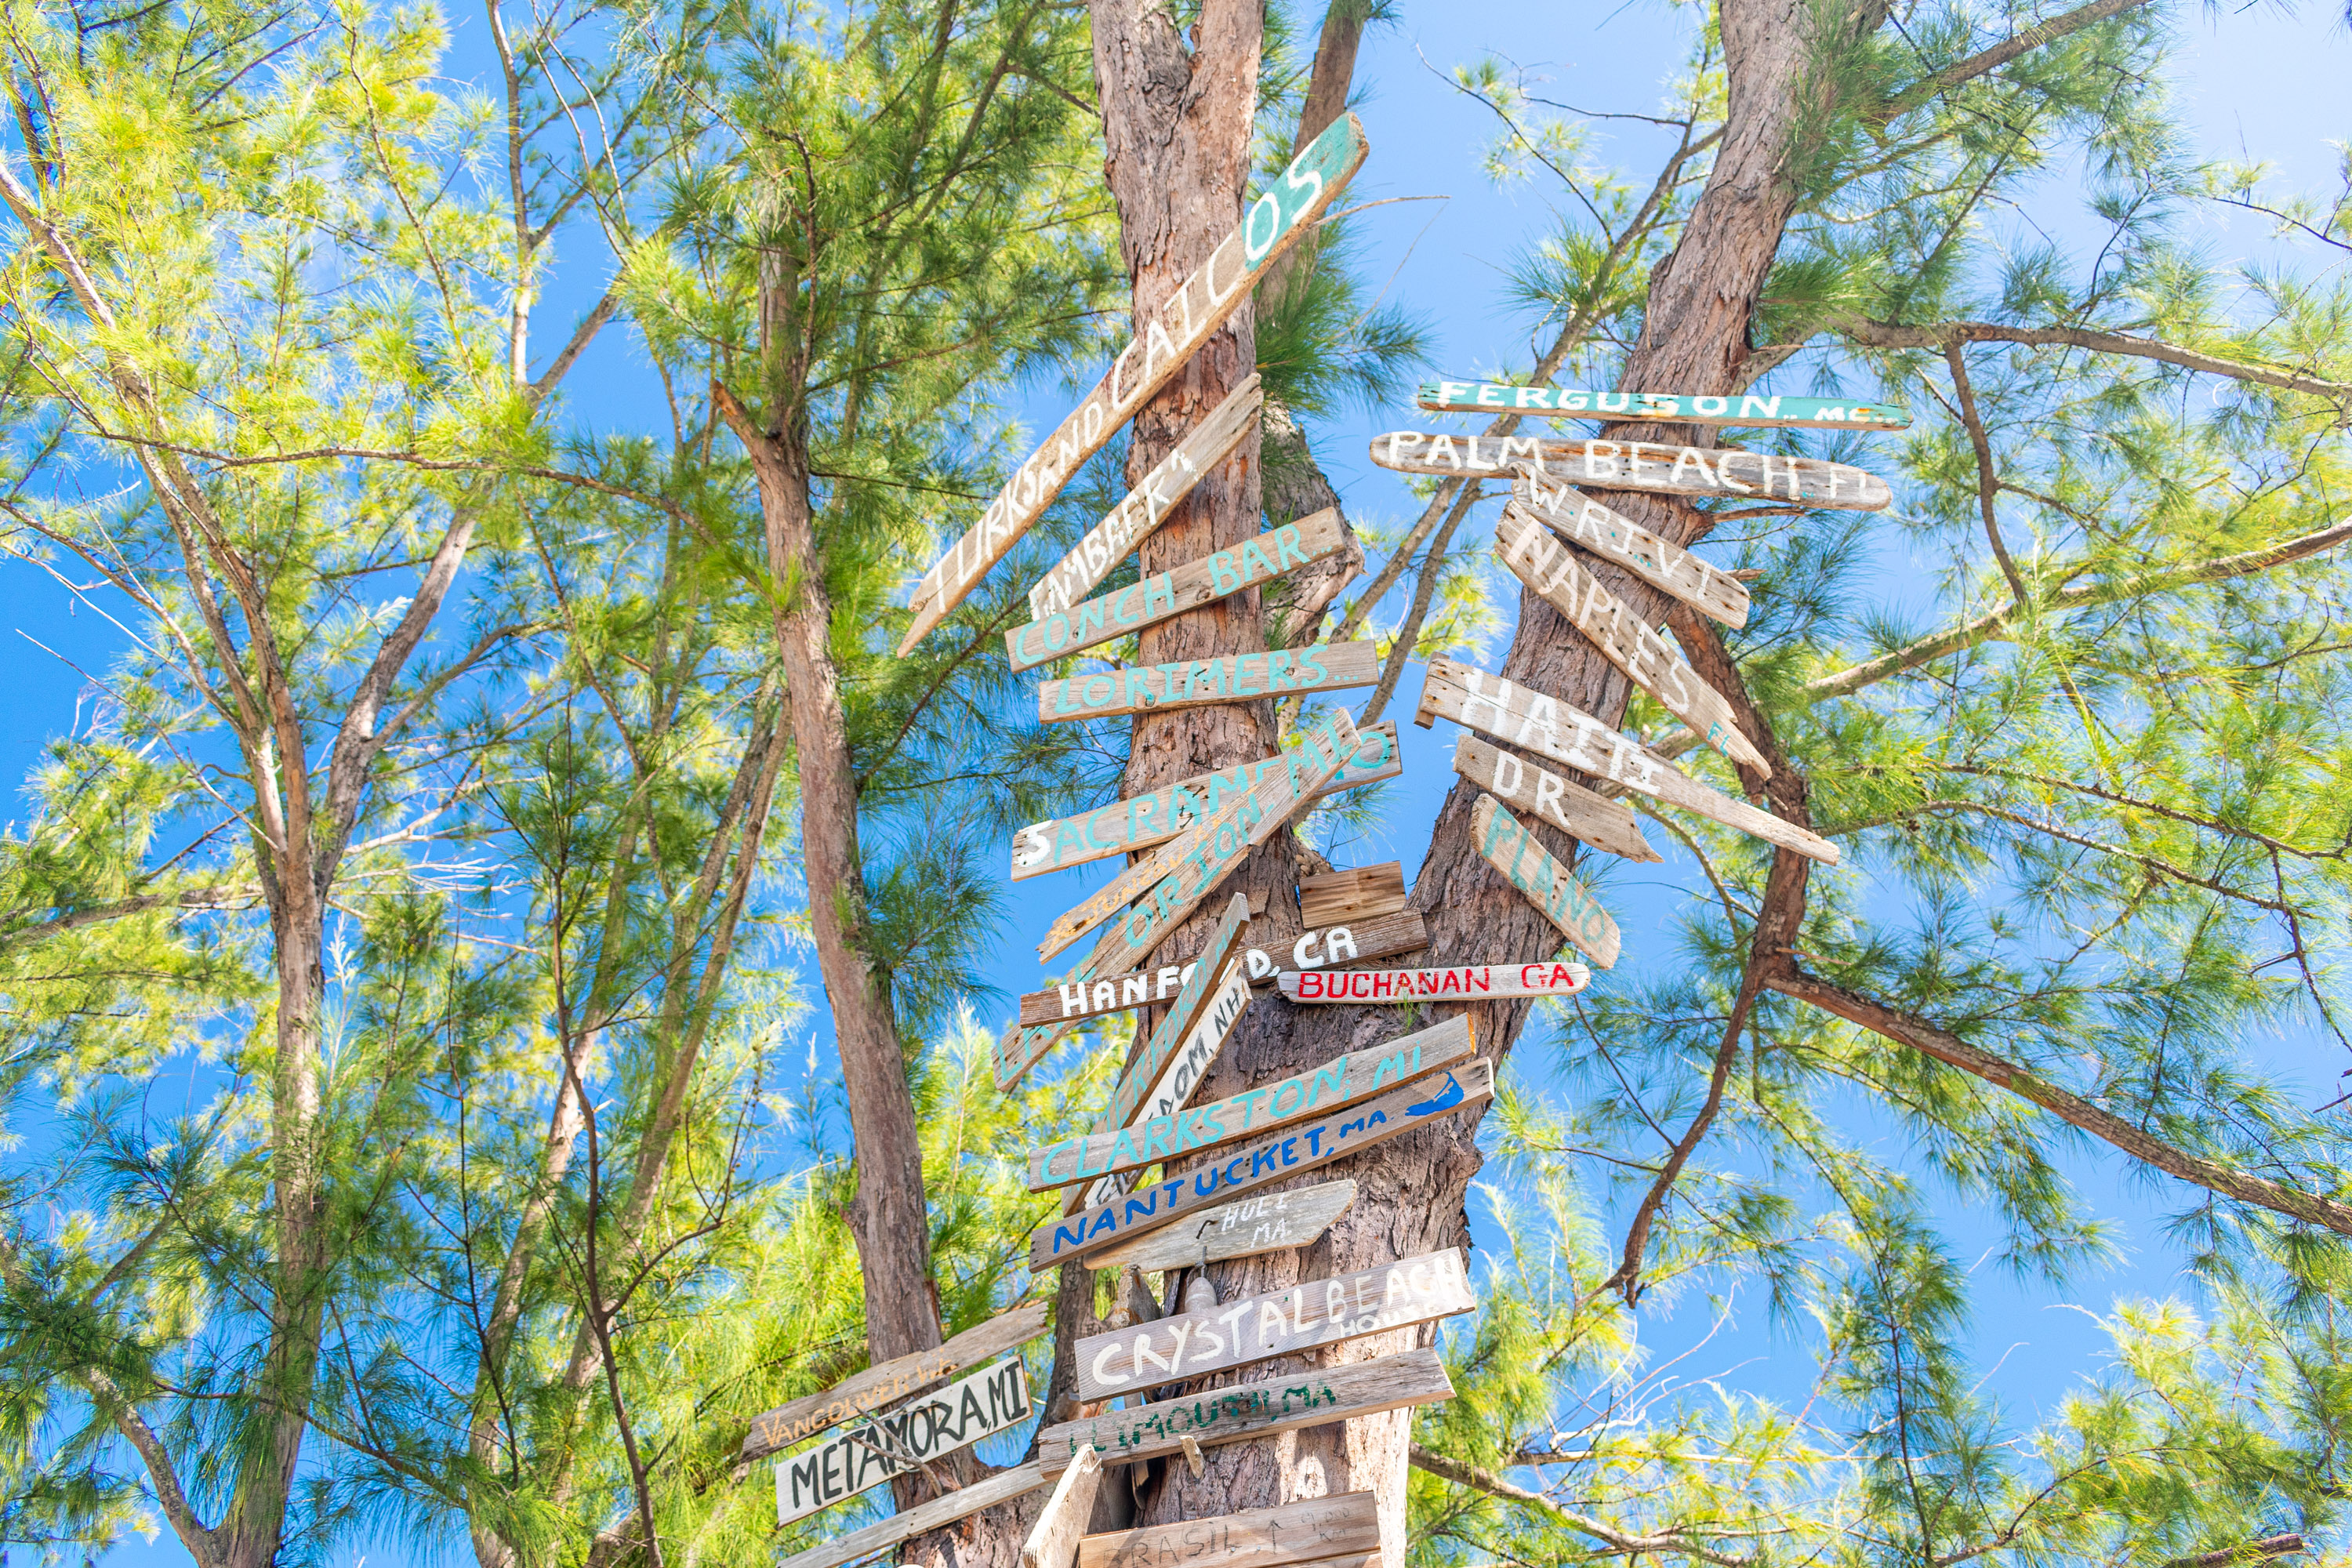 Bambarra Beach Australian Pines Signpost